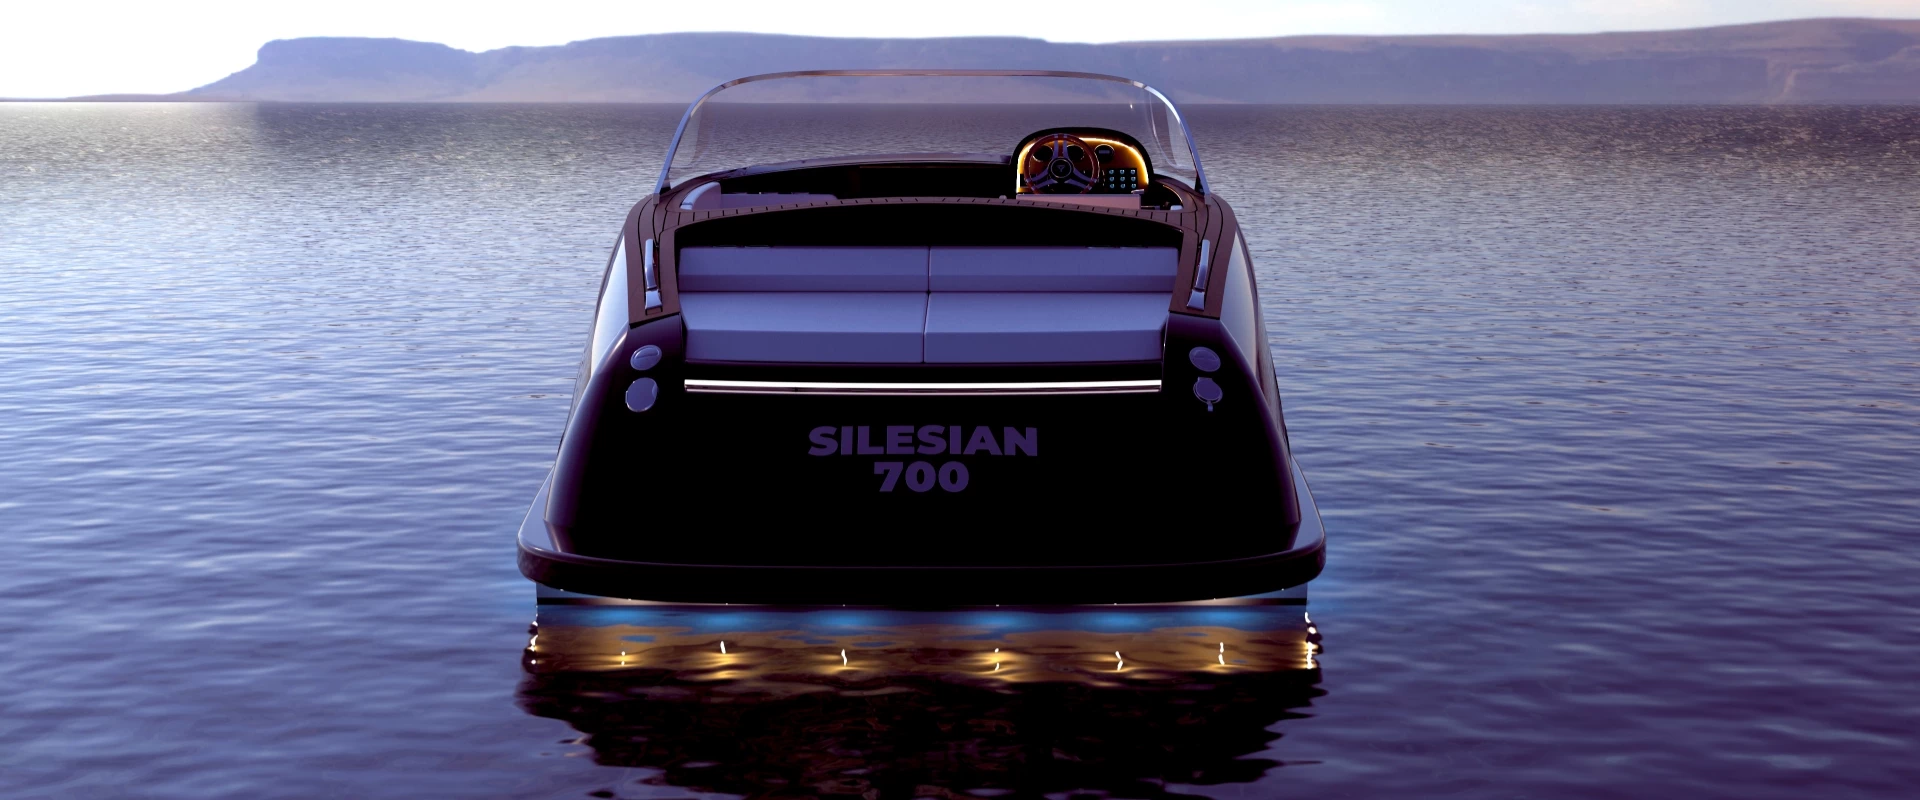 Jacht klasy C Silesian 700 na jeziorze